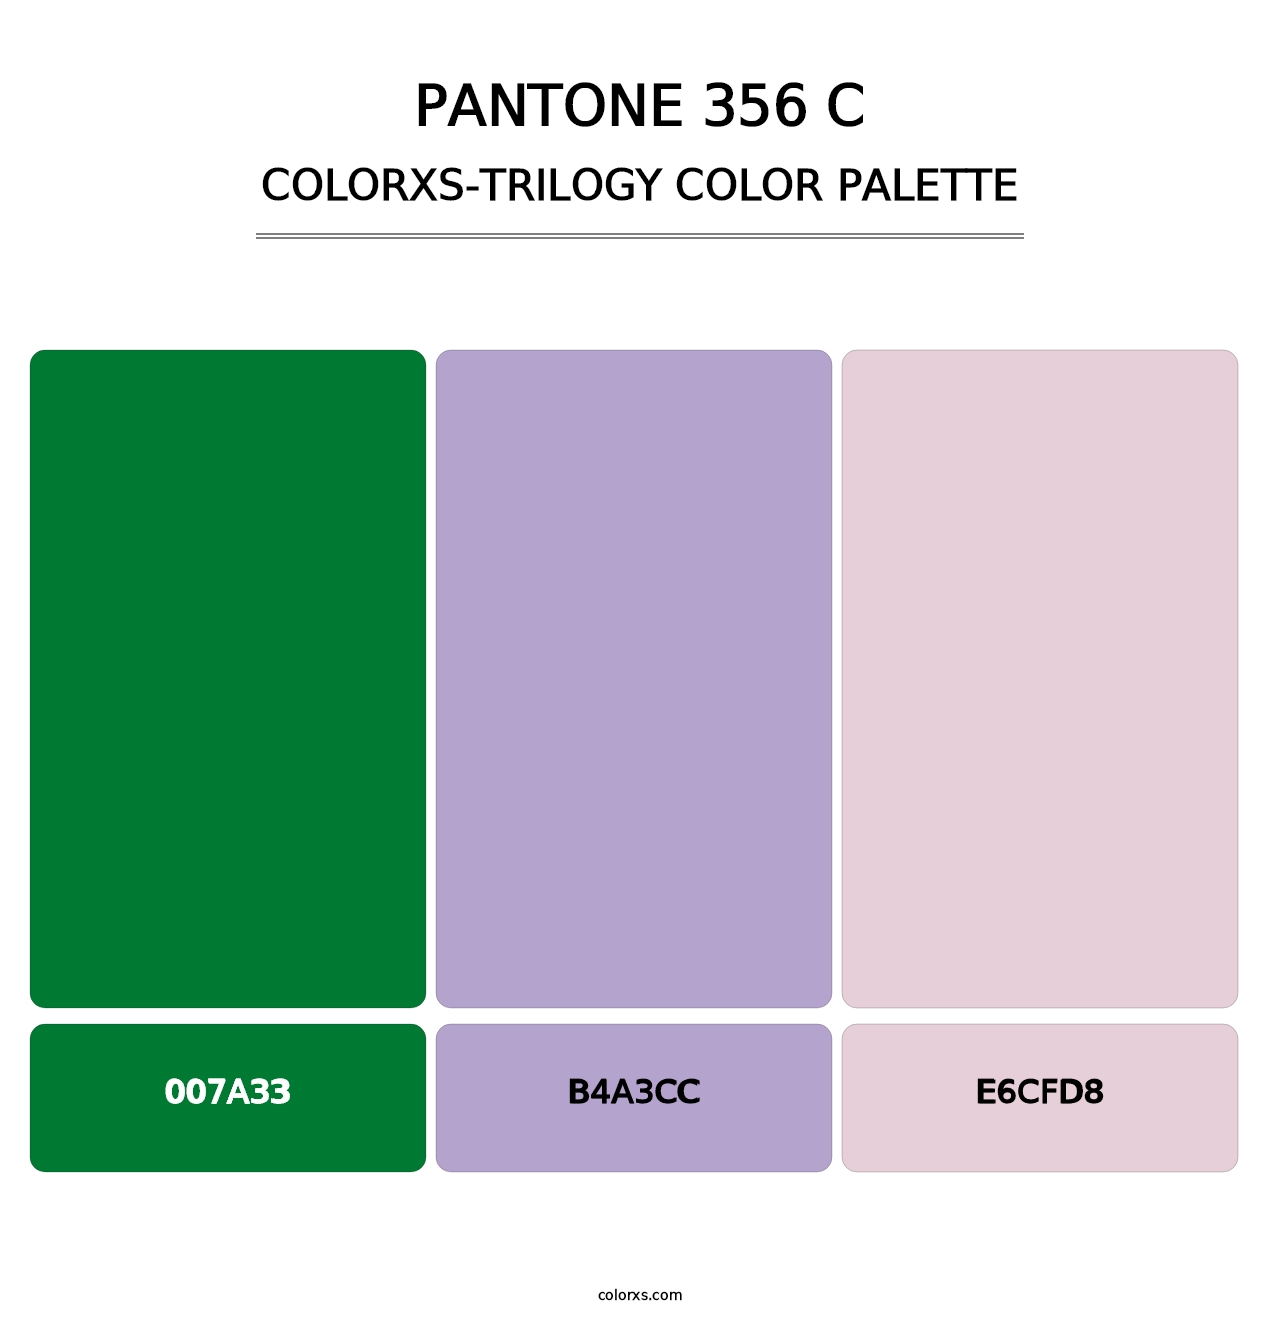 PANTONE 356 C - Colorxs Trilogy Palette